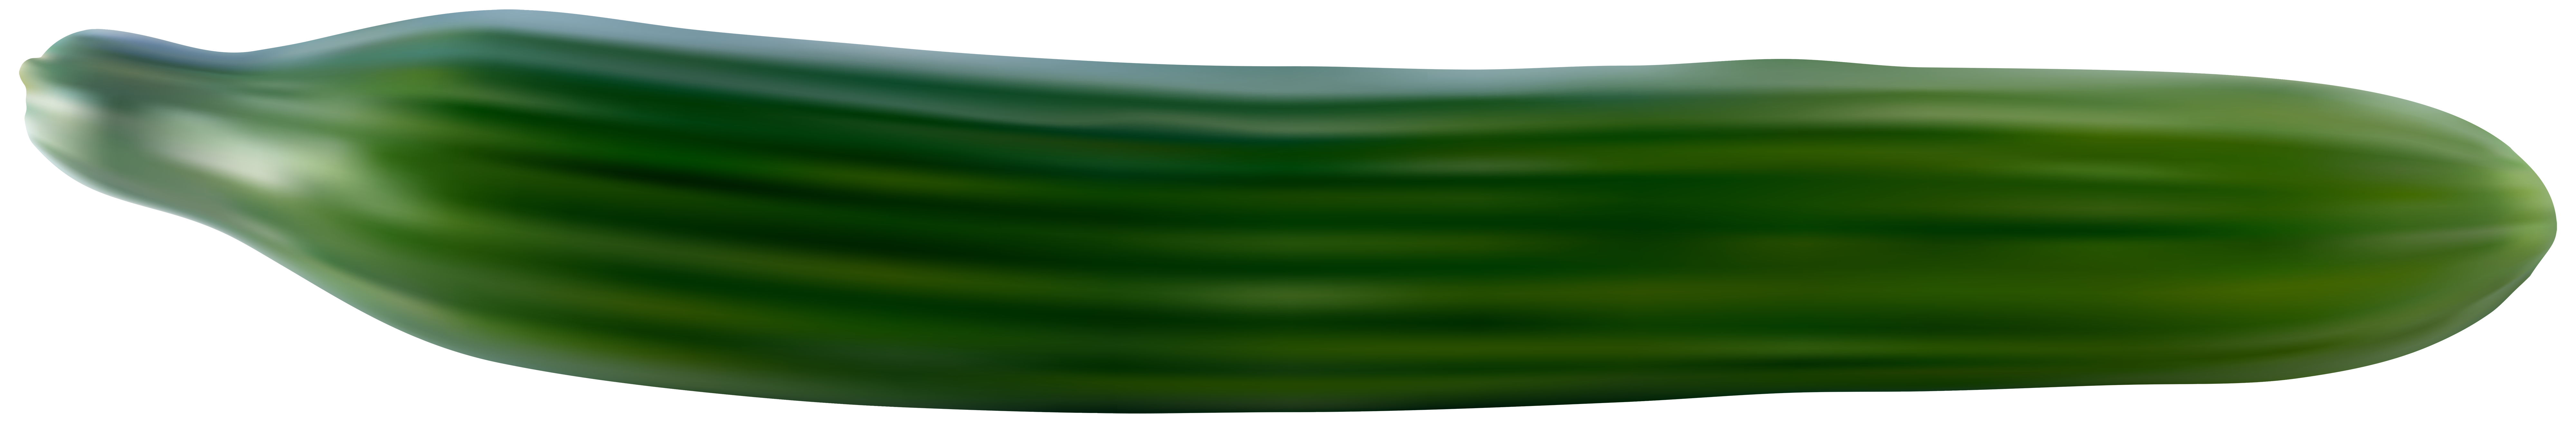 Enkele komkommer PNG Transparant Beeld